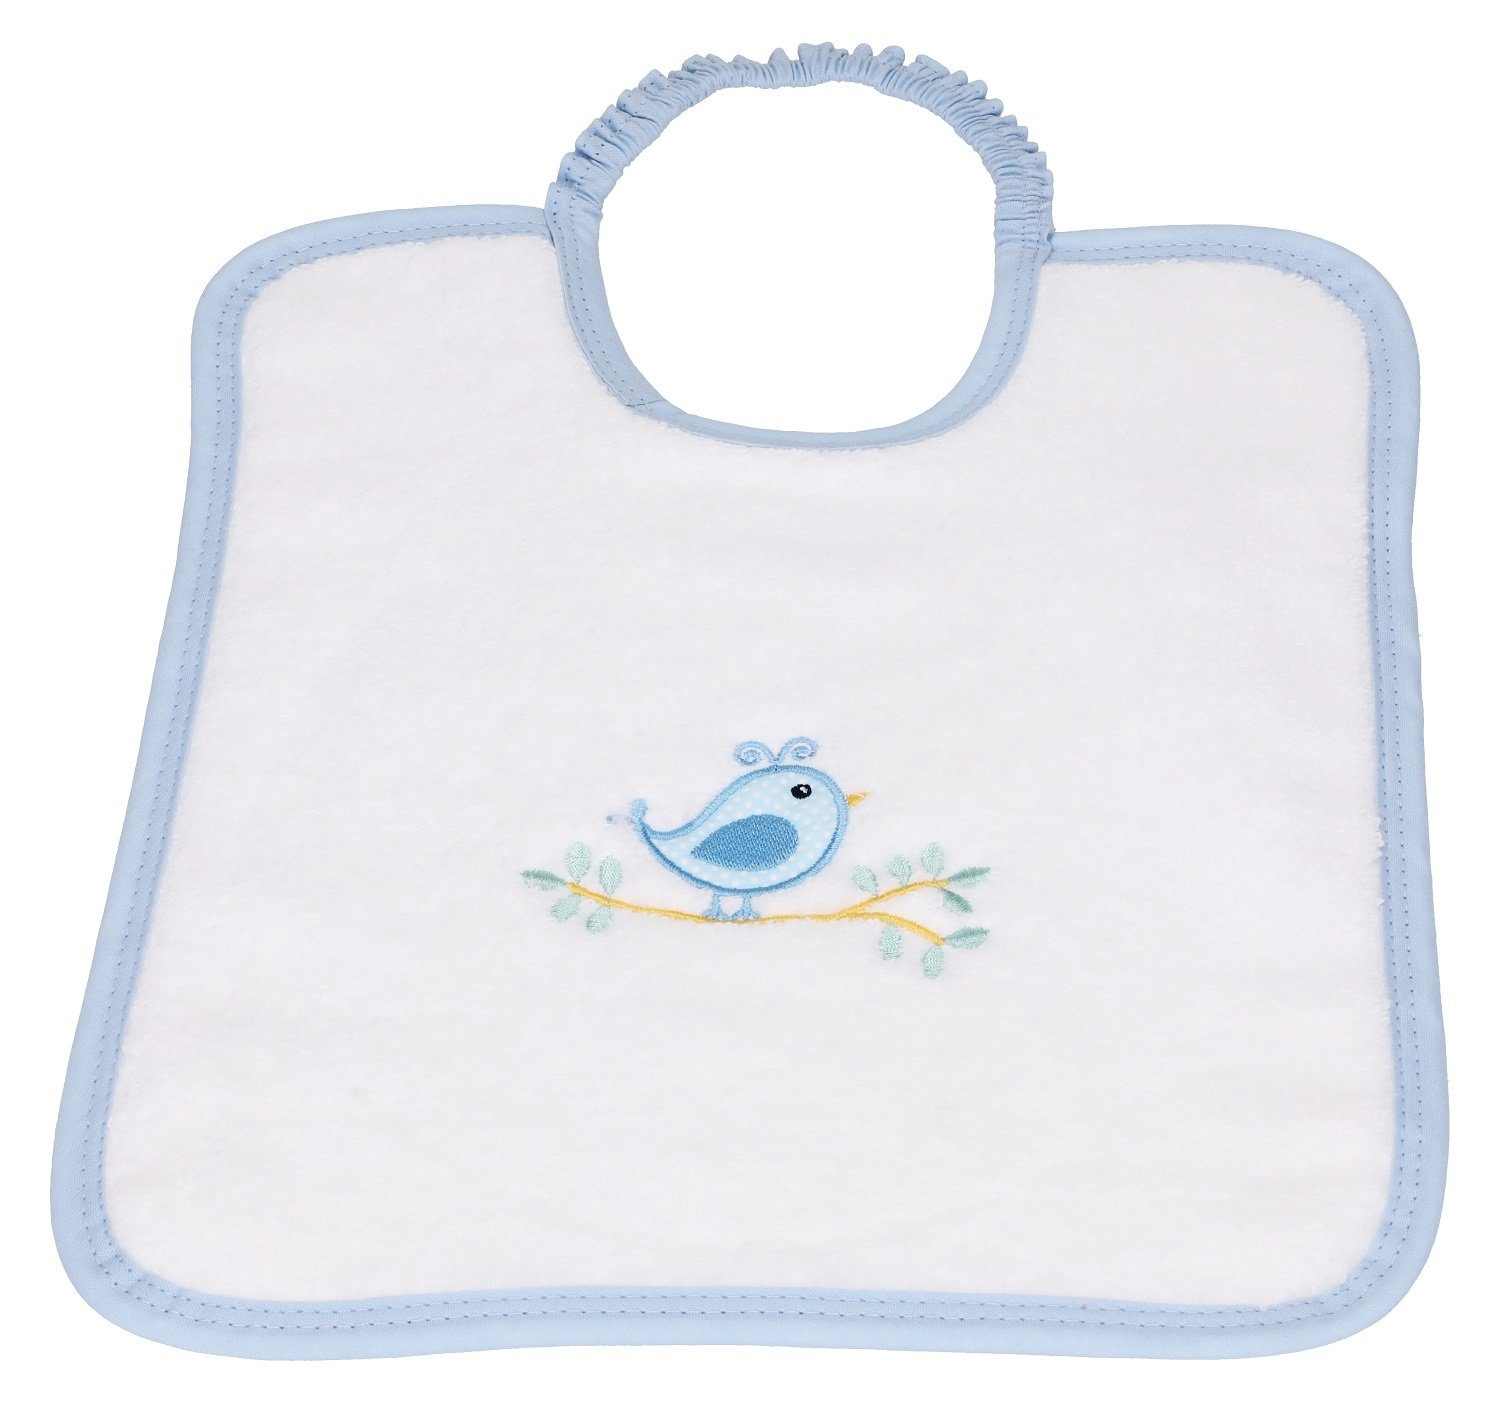 Lätzchen 1 VÖGELCHEN Kapuzenhandtuch 1 Babyset Waschhandschuh, weiß-blau Betz 100% 3tlg Baumwolle Kinderbadetuch 1